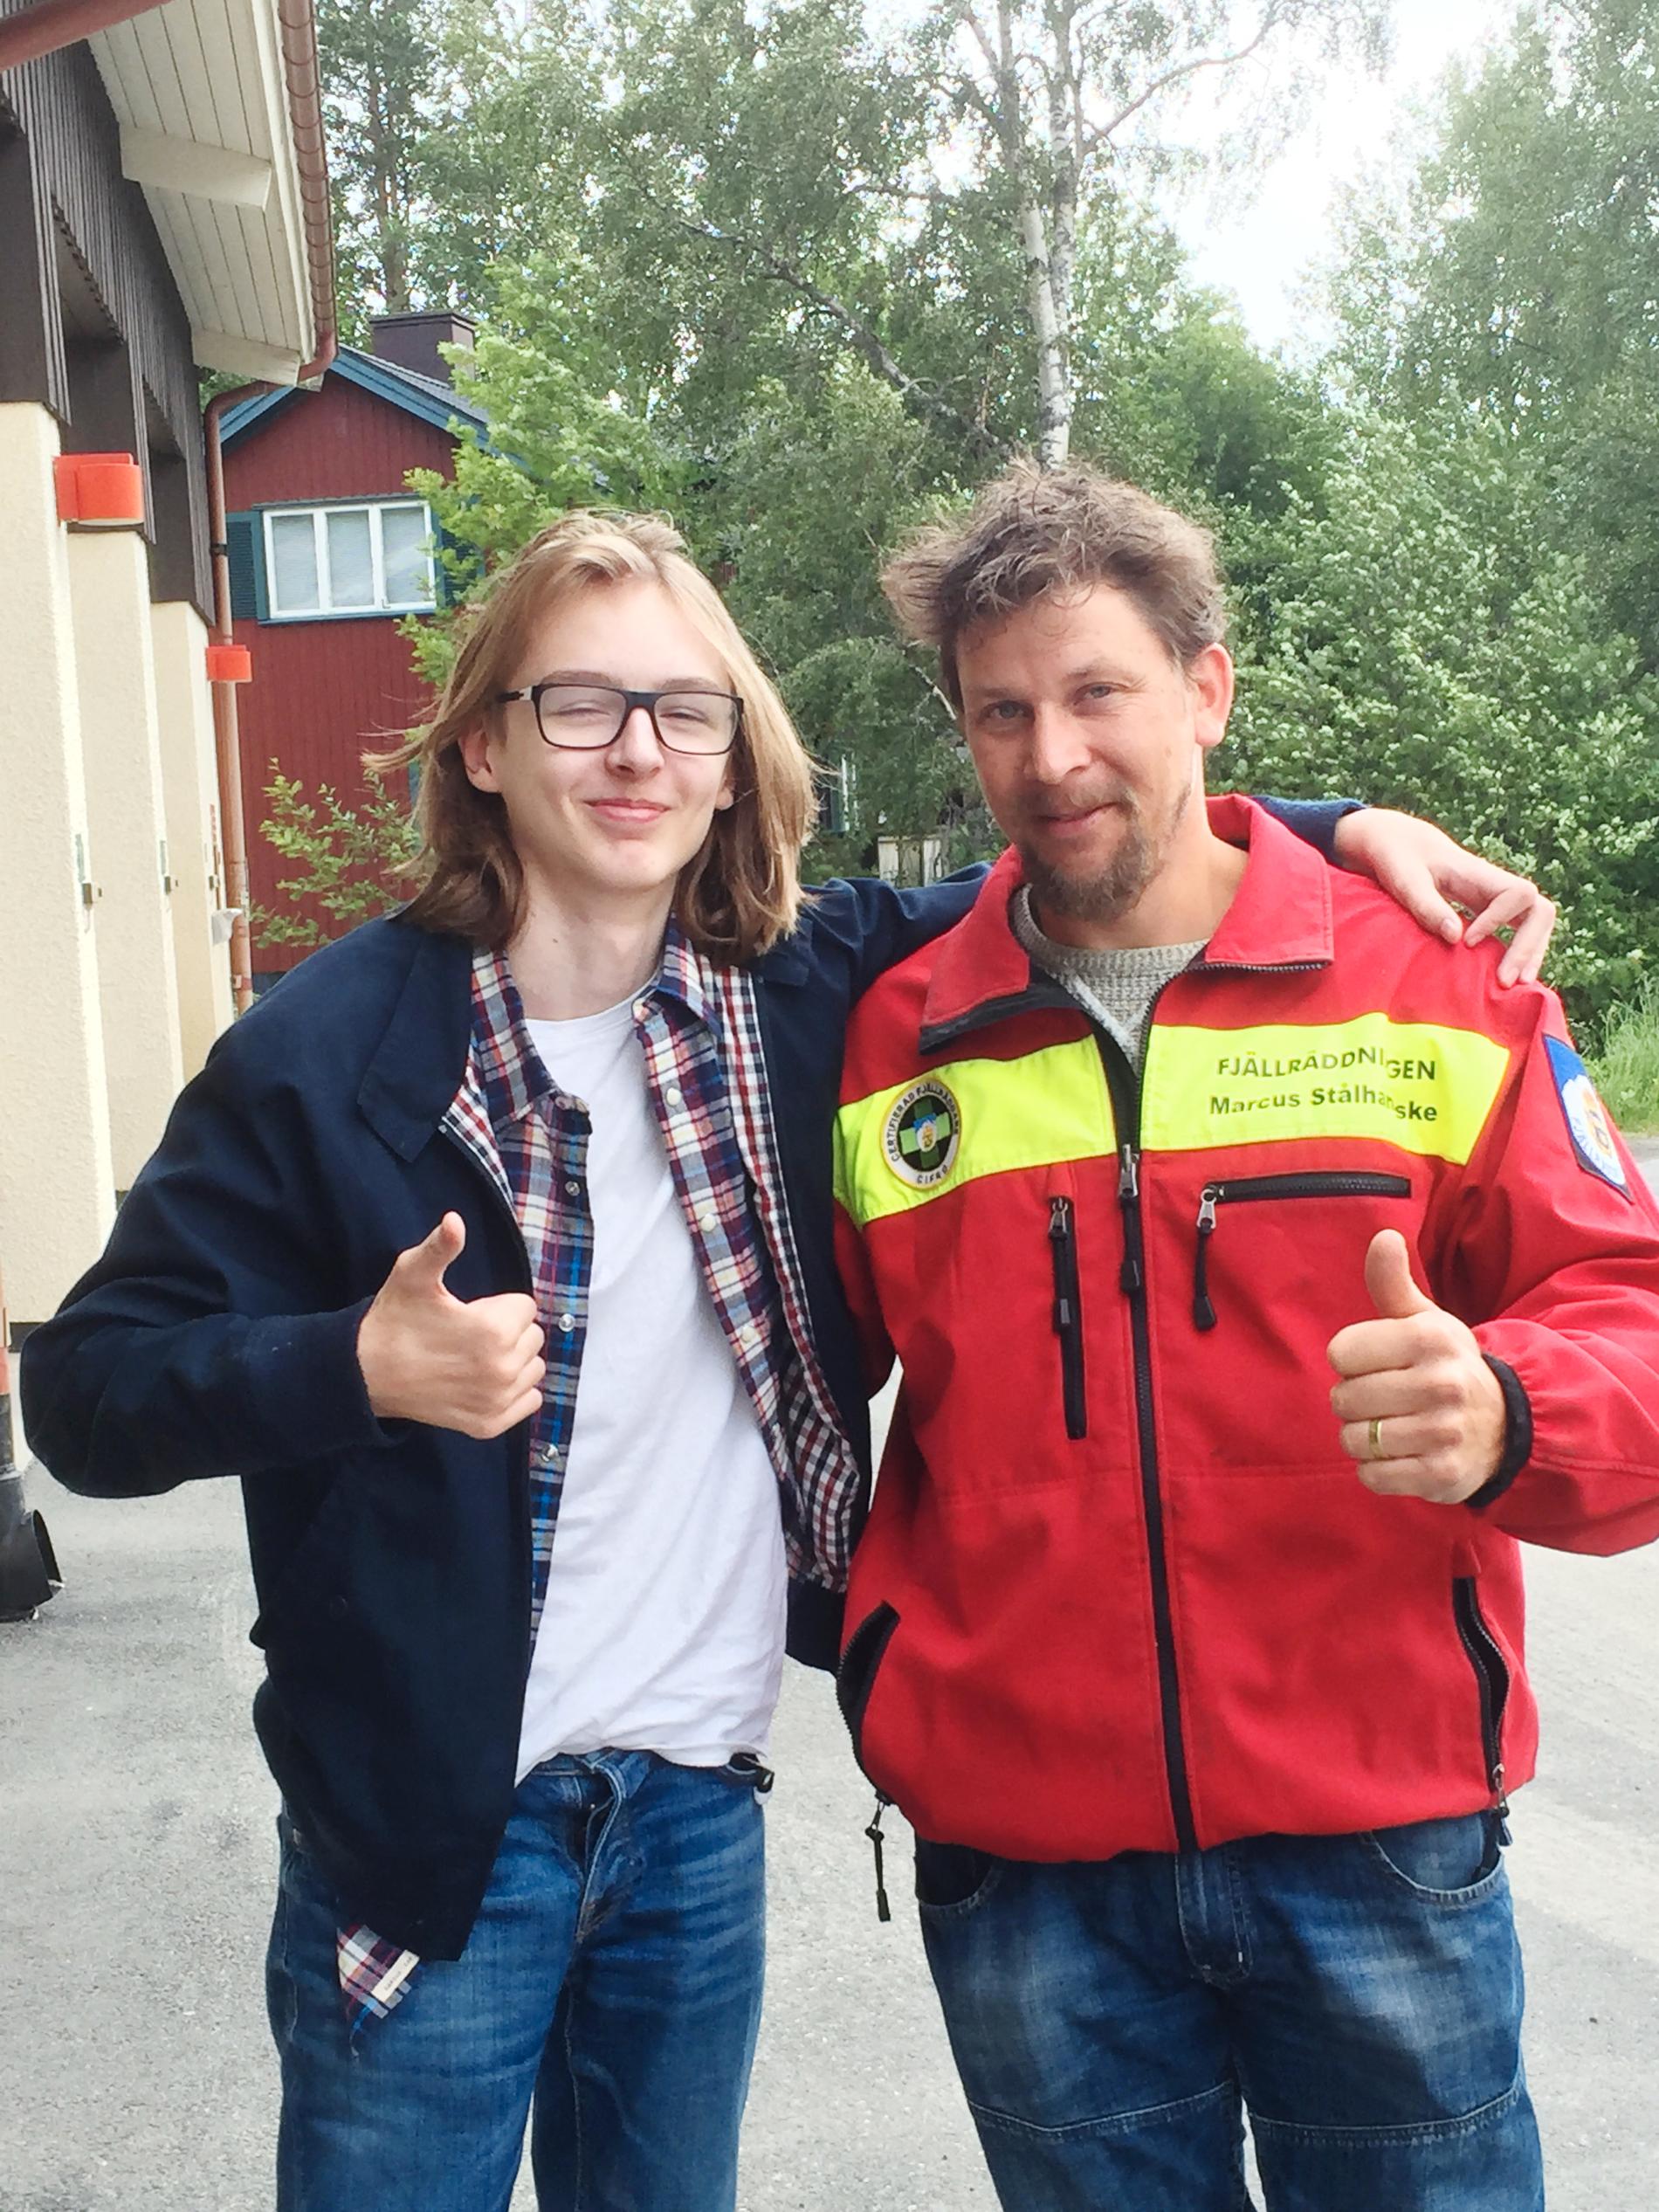 Leo Wågberg med Marcus Stålhandske från Fjällräddningen. Leo räddades efter att ha fått hjärtstopp när han hamnade i vattnet vid en kanottur på konfirmationslägret.